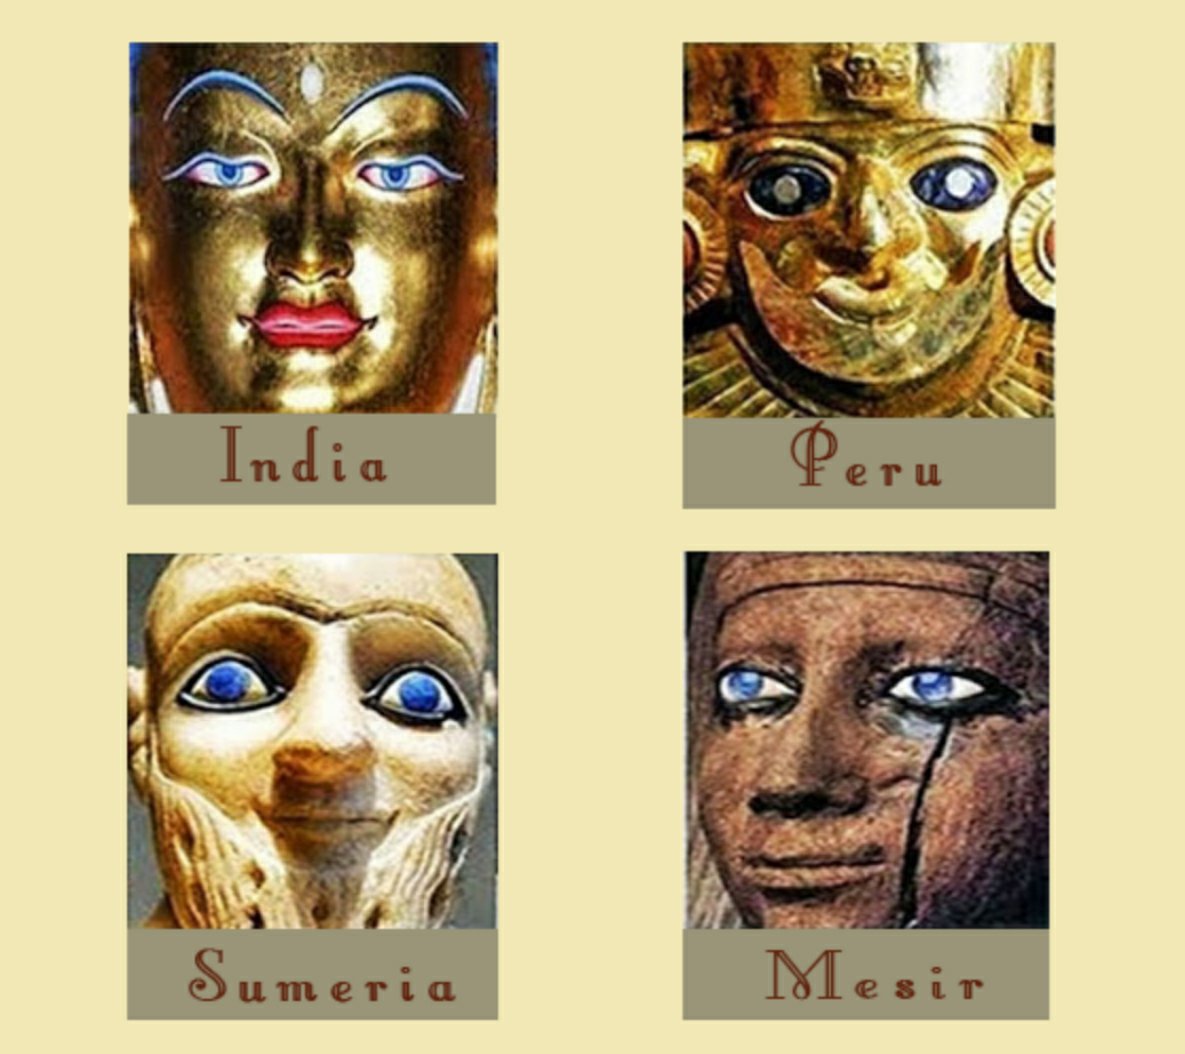 ბევრ უძველეს ცივილიზაციაში გამოსახულია არსებები ლურჯი თვალებით.